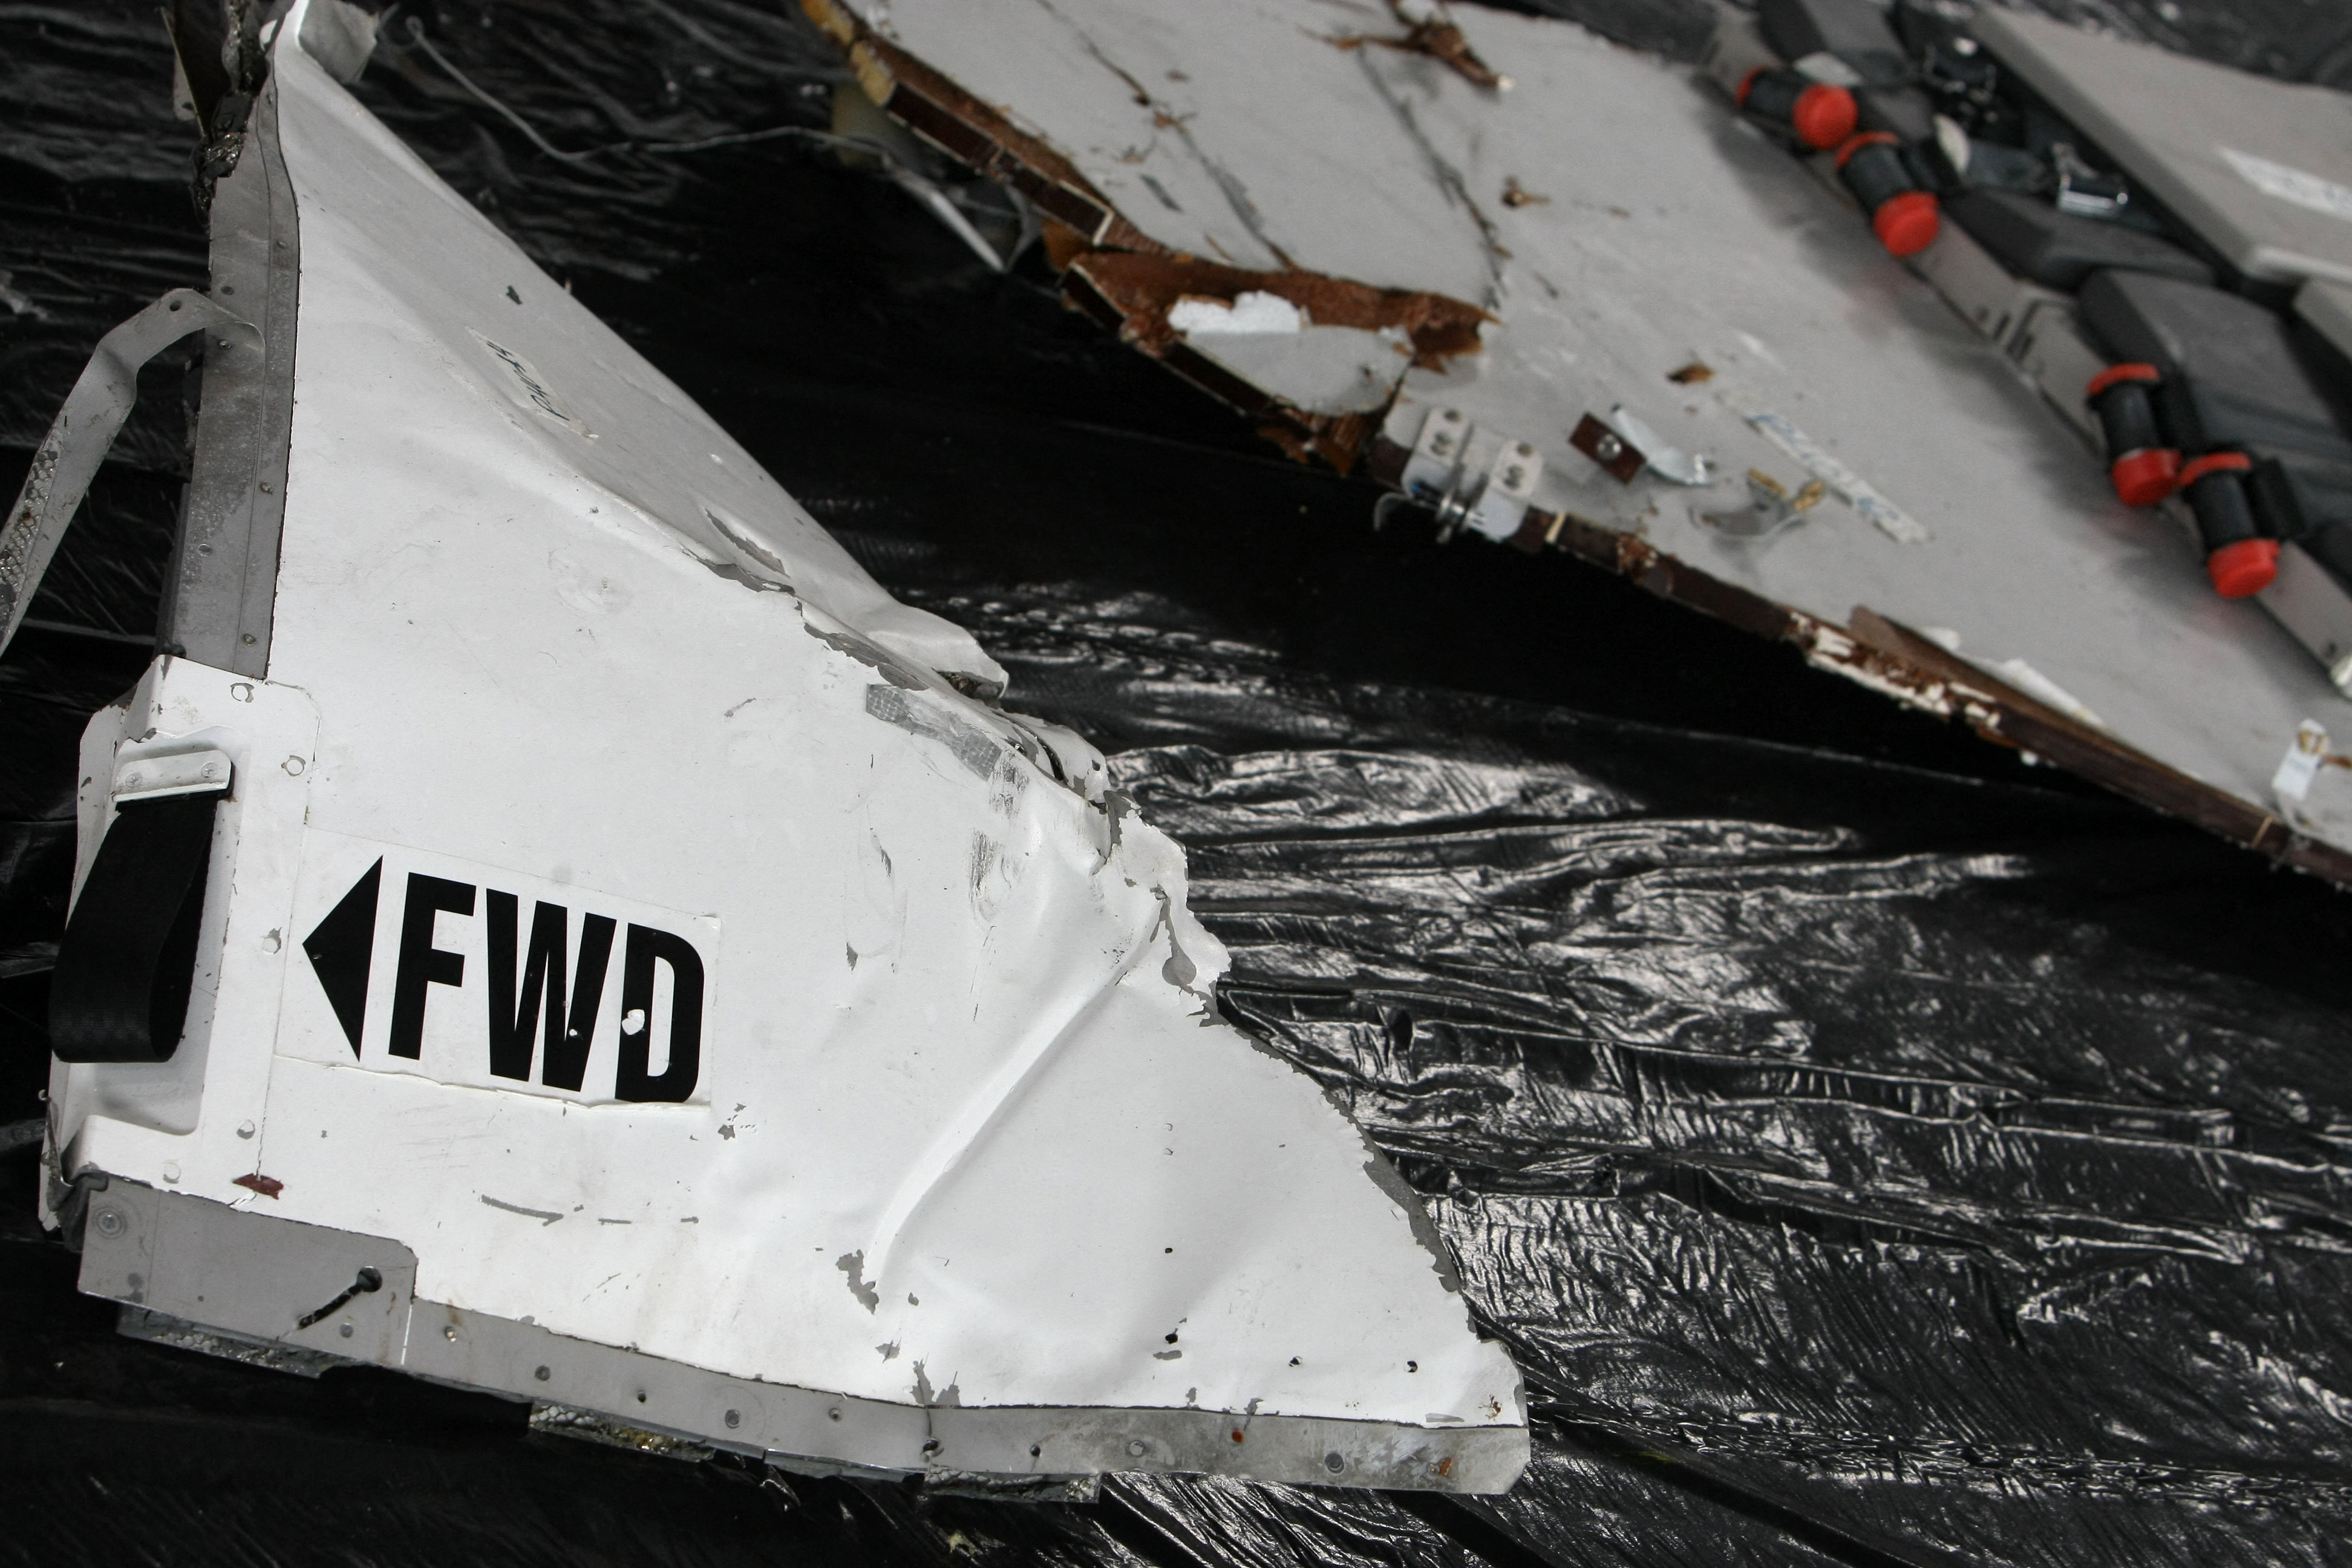 Débris de l'avion A330 d'Air France, vol AF447 qui s'est écrasé en 2009 | Source : Getty Images